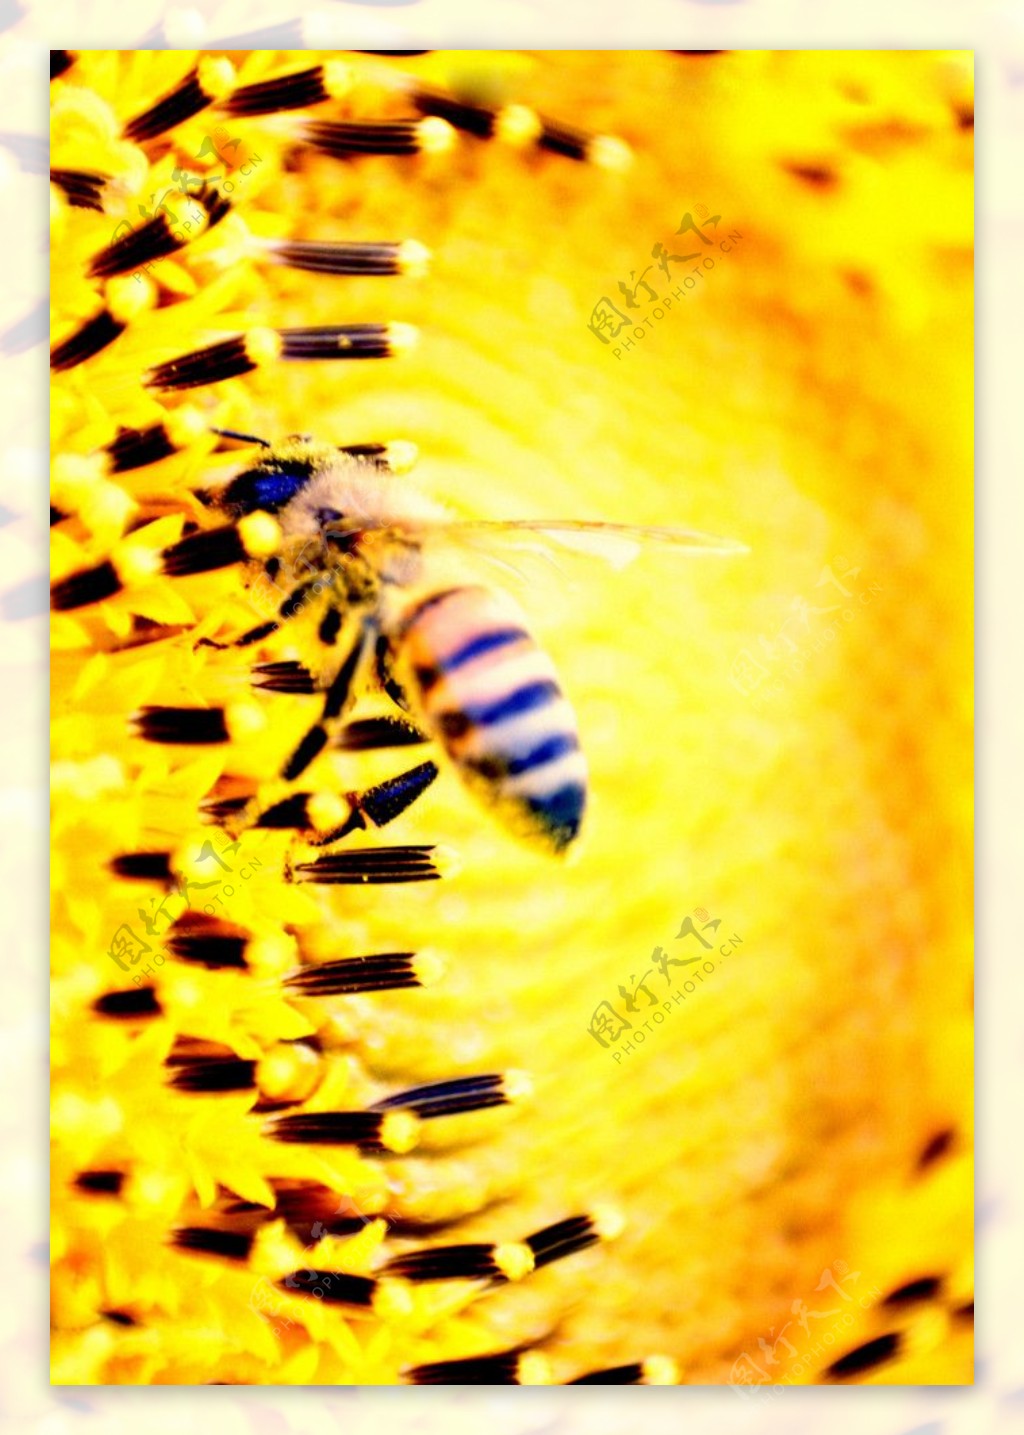 蜜蜂图片